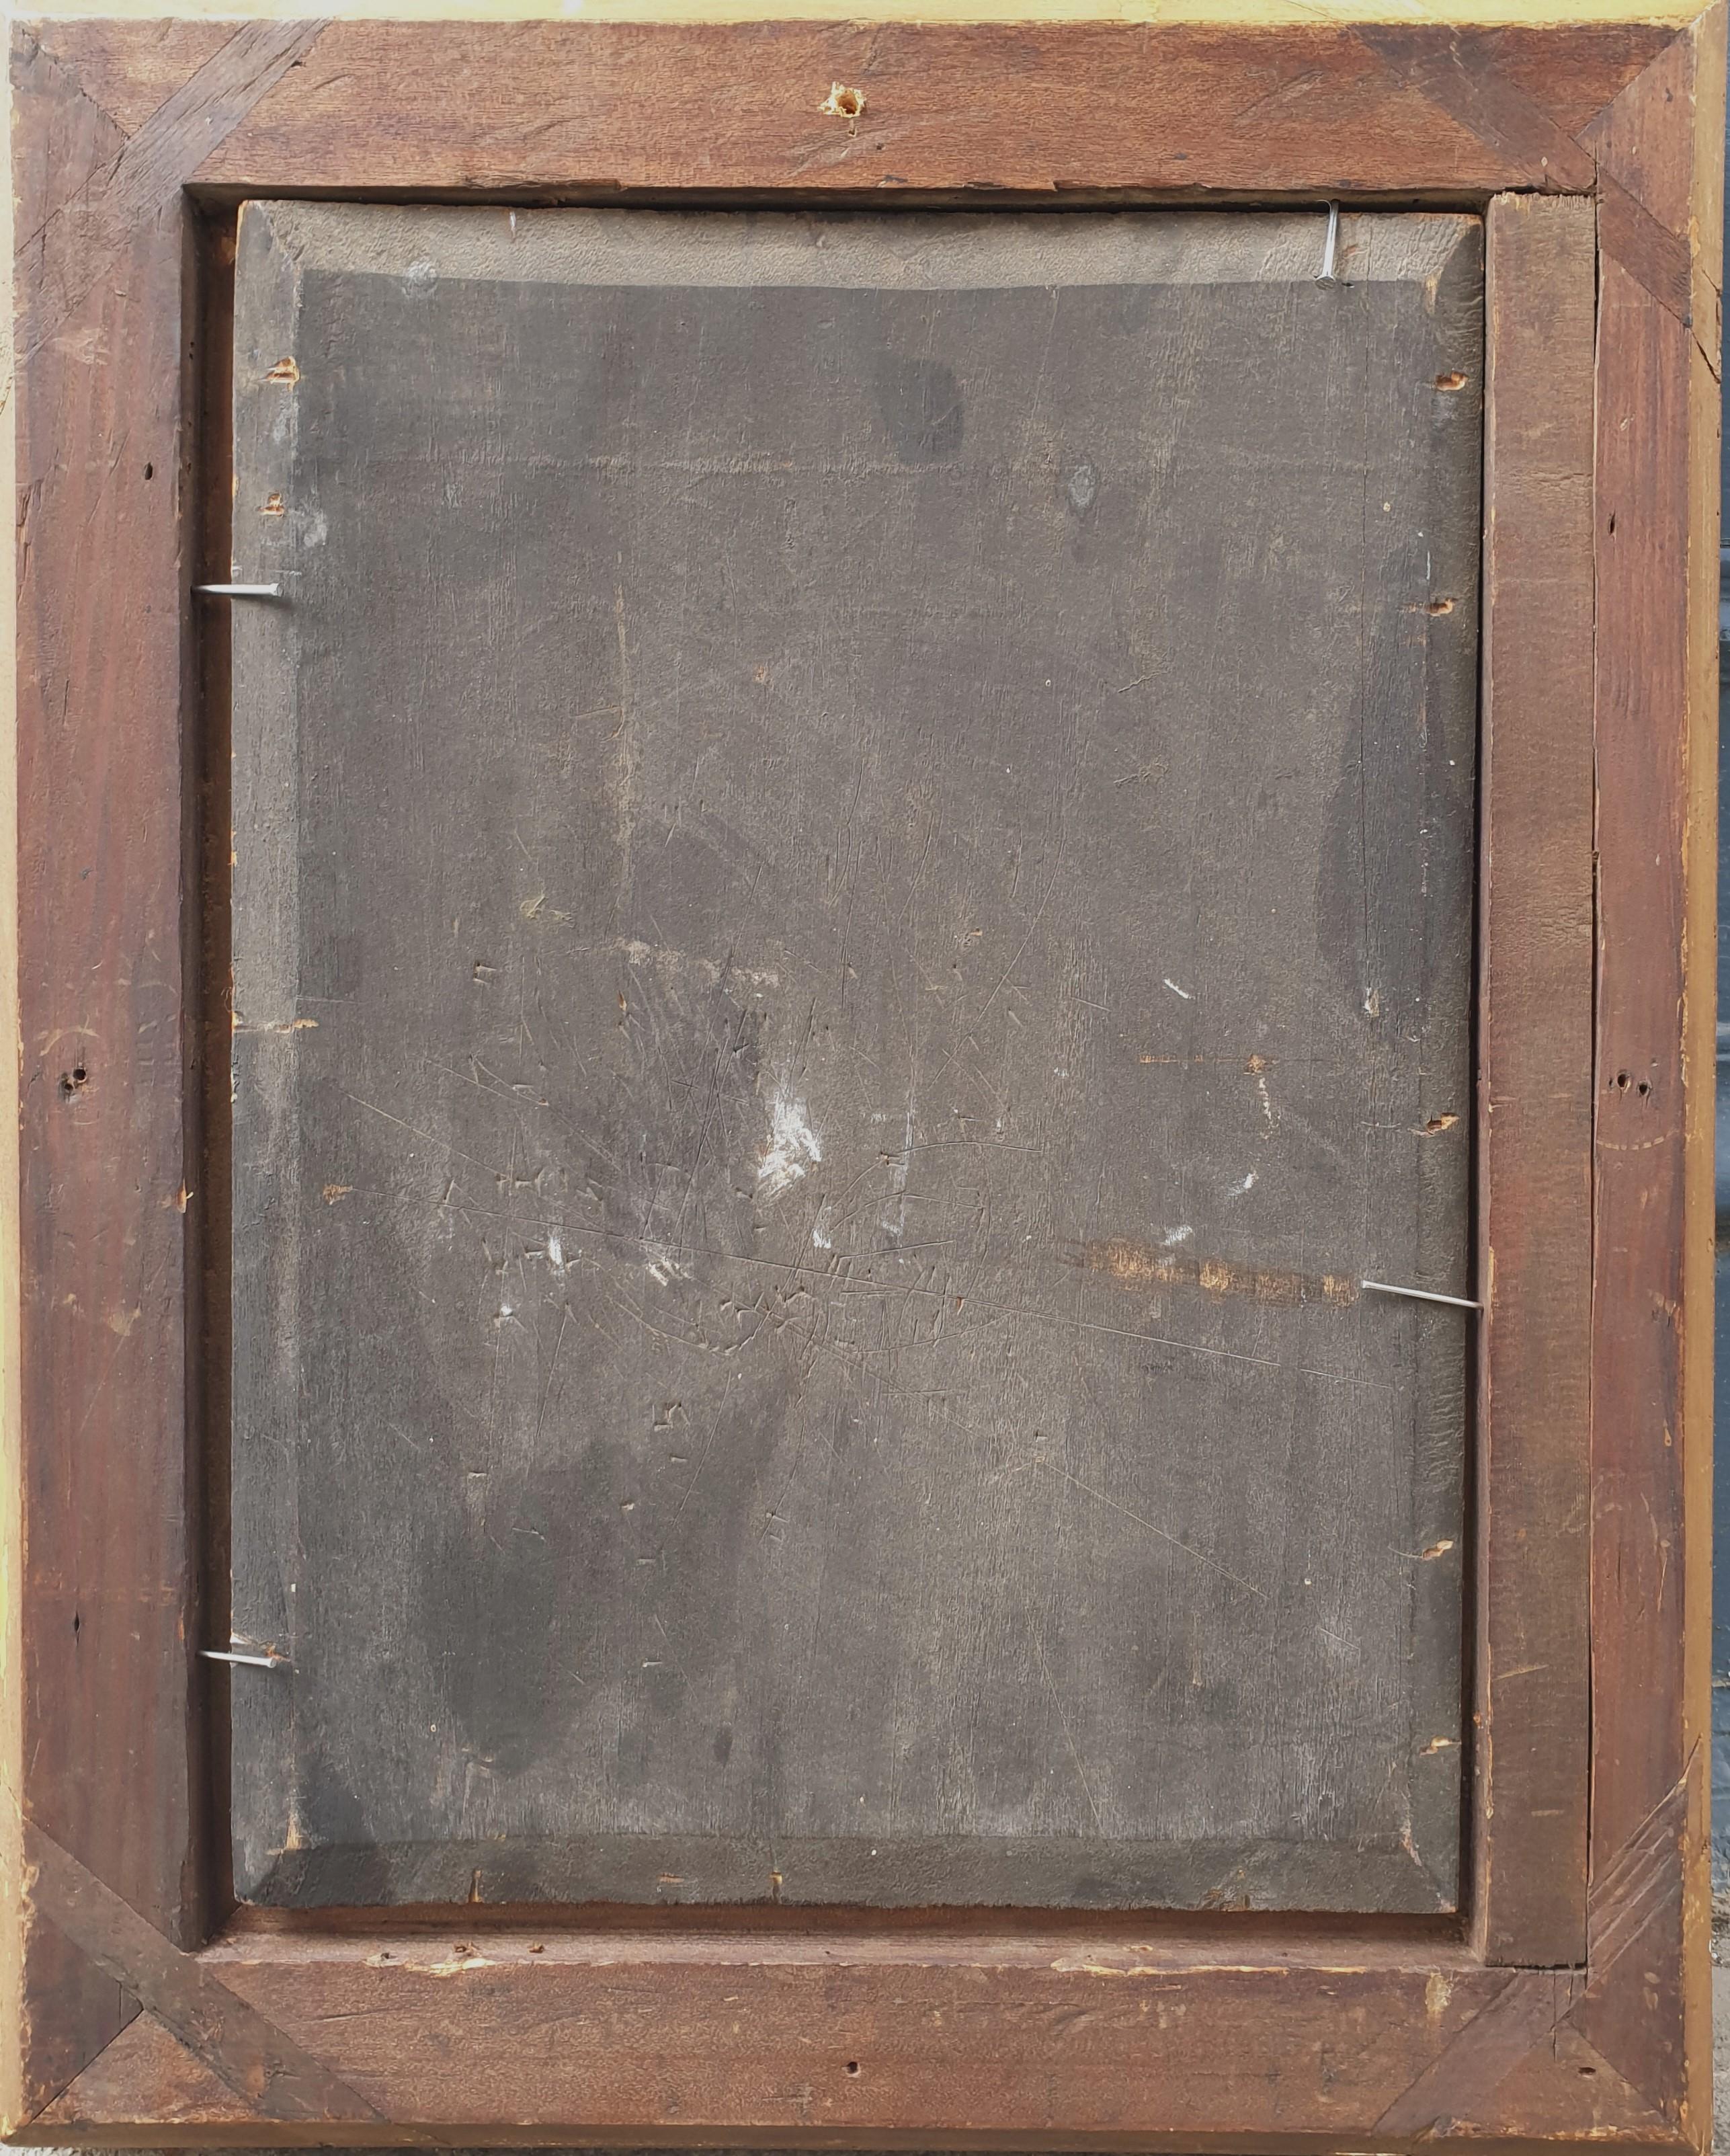 Nicolas RENIS
1807 - 1881 
Huile sur bois 33 x 24 cm (44,5 x 34 cm avec le cadre)
Signé et daté en bas à gauche 